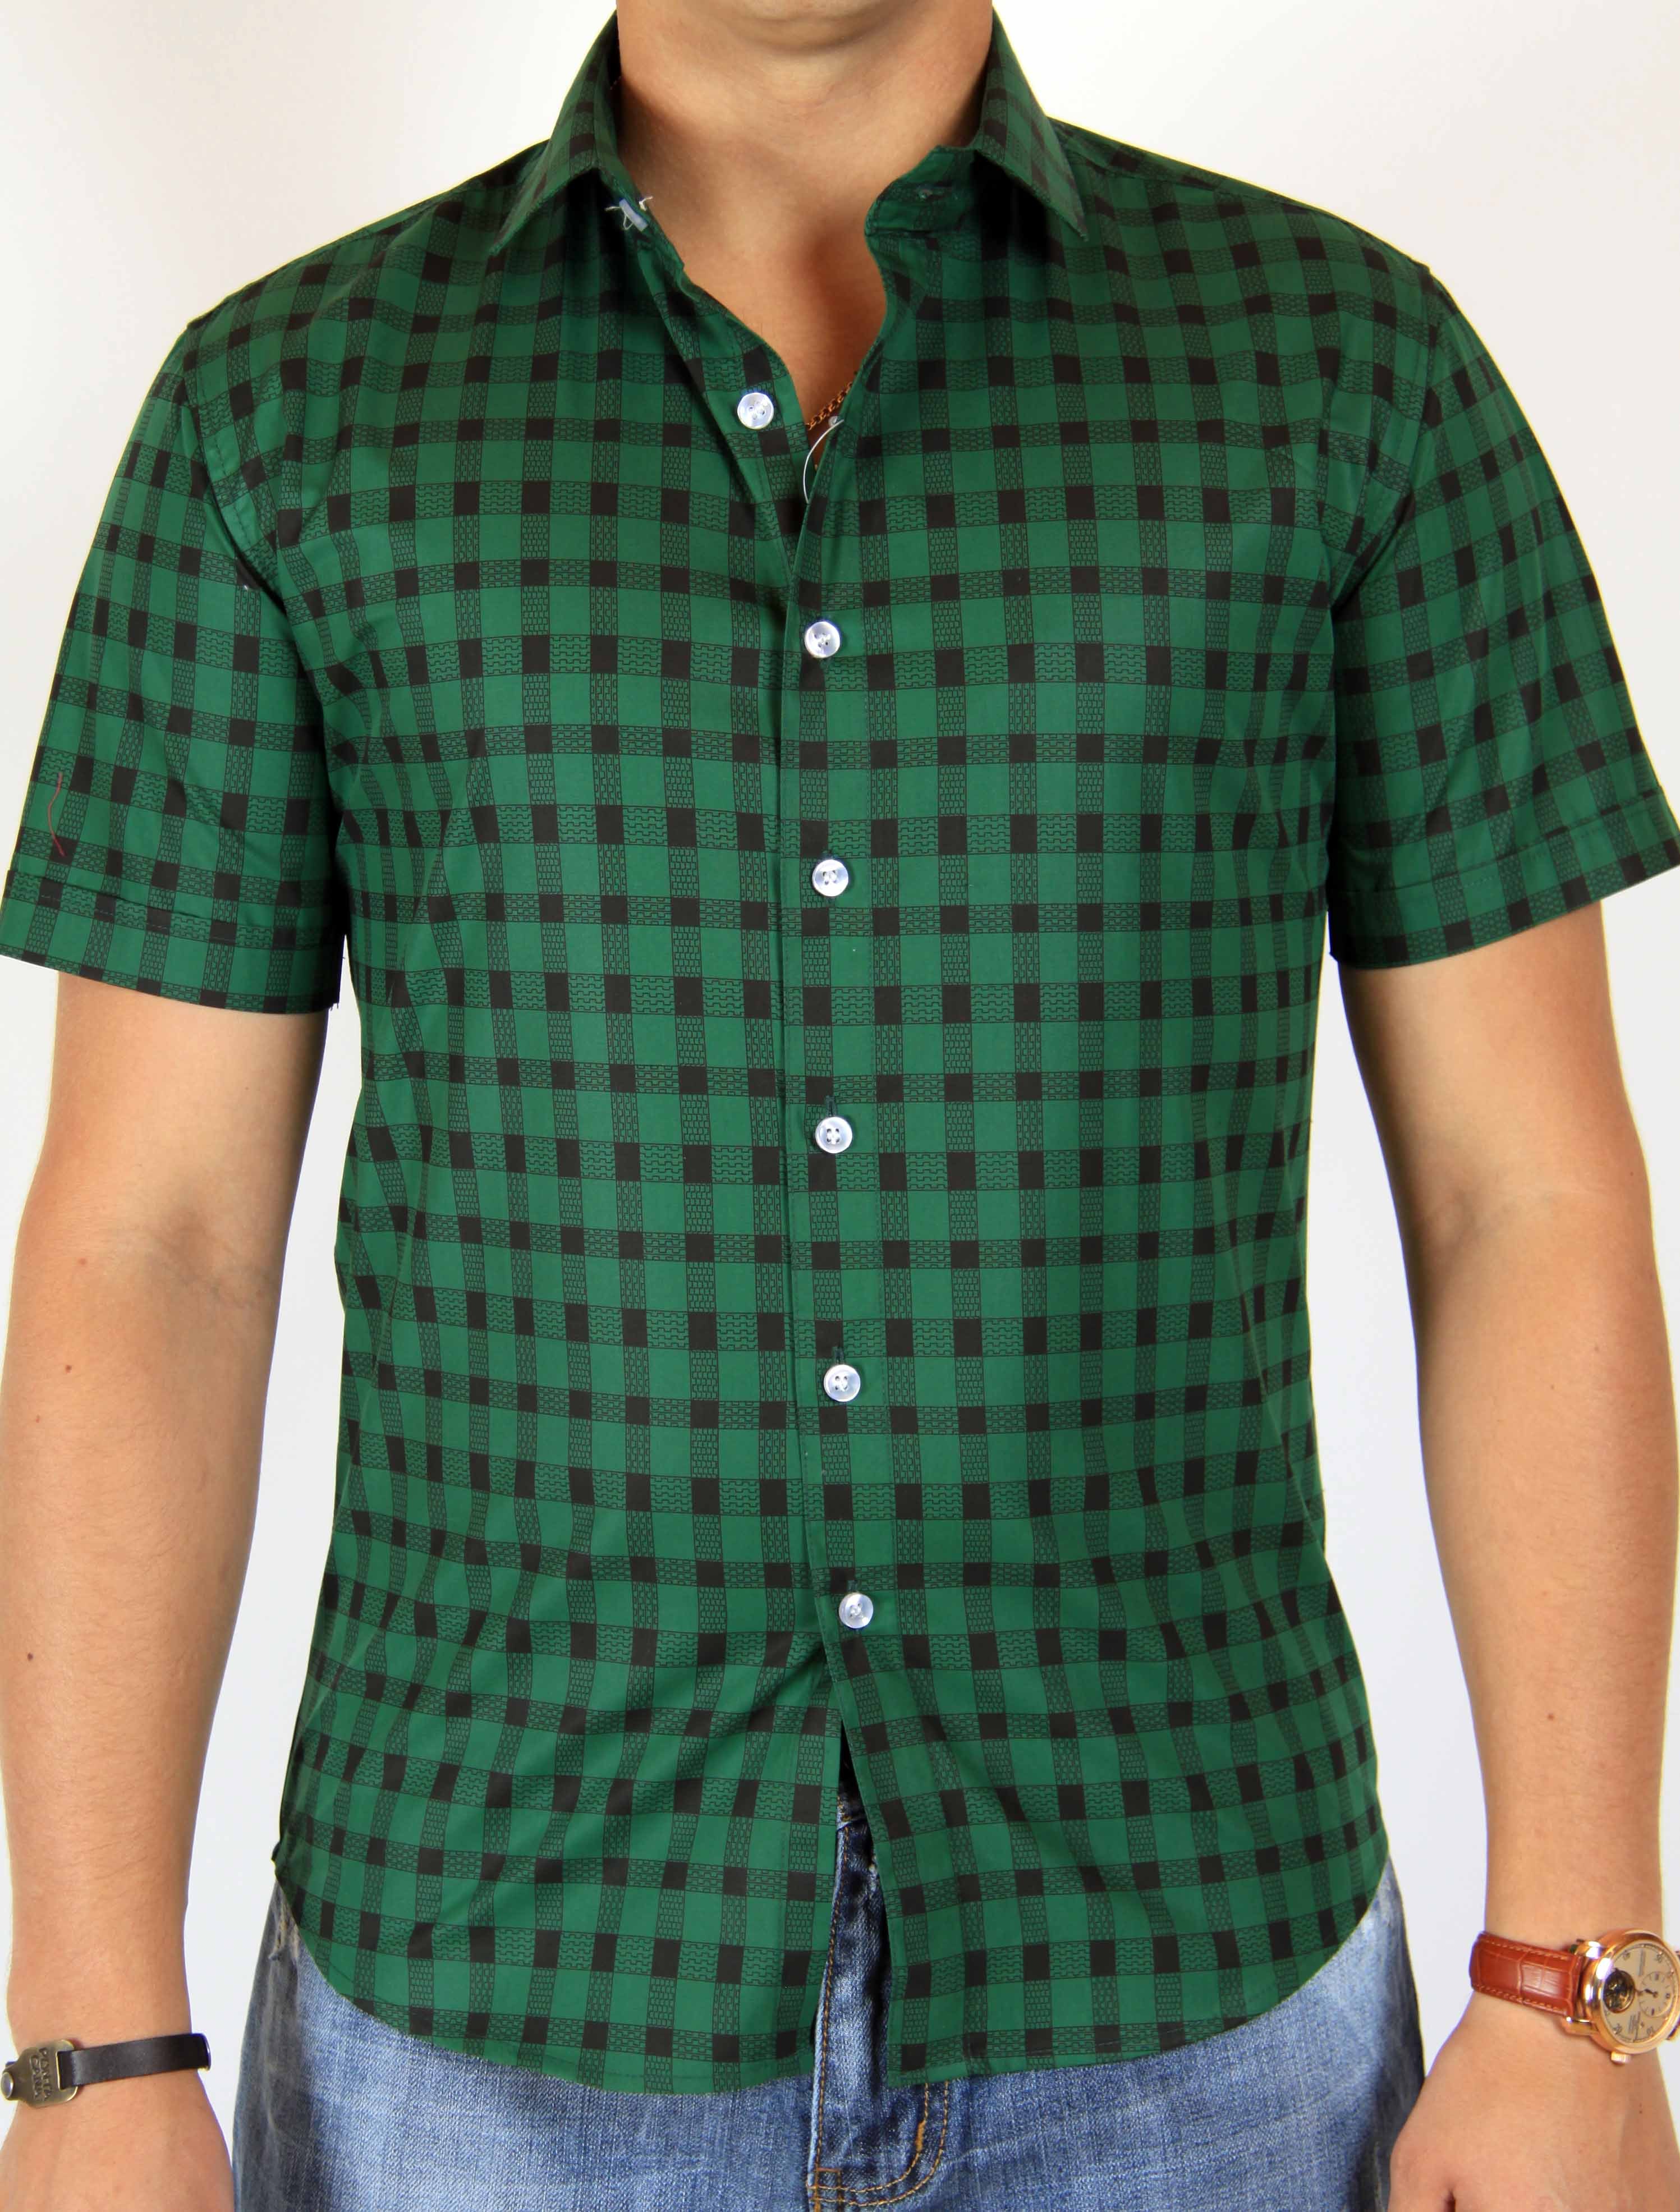 Мужская рубашка 52 размер. Рубашка. Рубашка мужская. Зеленая рубашка. Зеленая рубашка мужская.